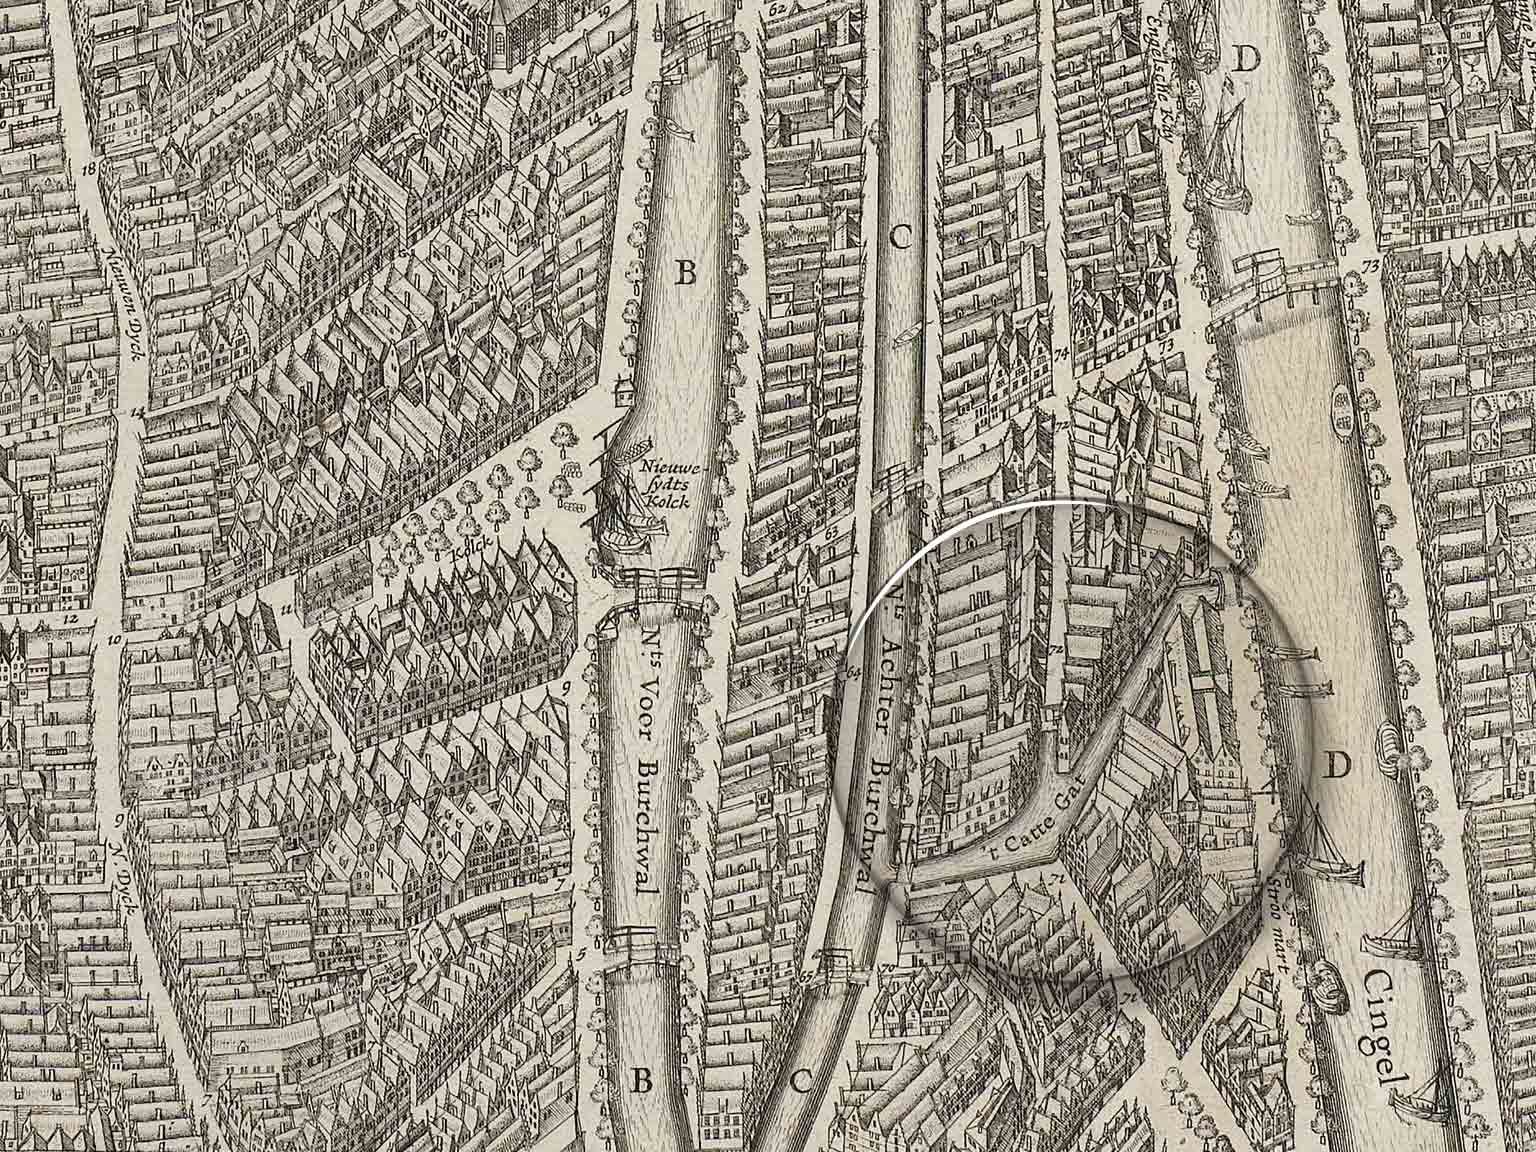 The Kattengat on a map from 1625 by Balthasar Florisz van Berckenrode